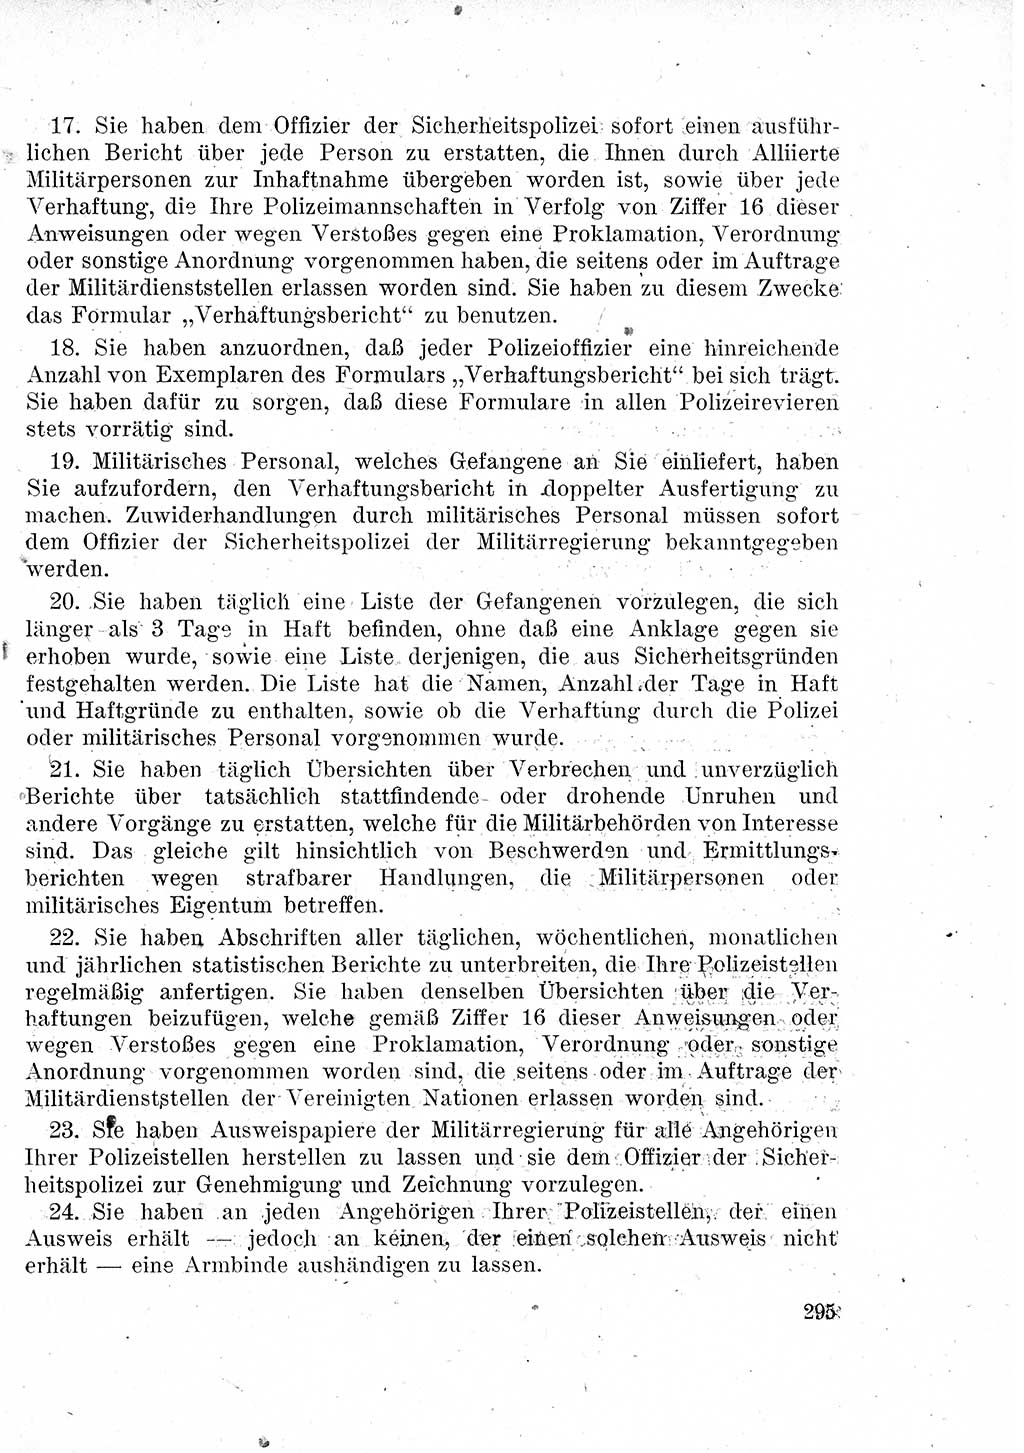 Das Recht der Besatzungsmacht (Deutschland), Proklamationen, Deklerationen, Verordnungen, Gesetze und Bekanntmachungen 1947, Seite 295 (R. Bes. Dtl. 1947, S. 295)